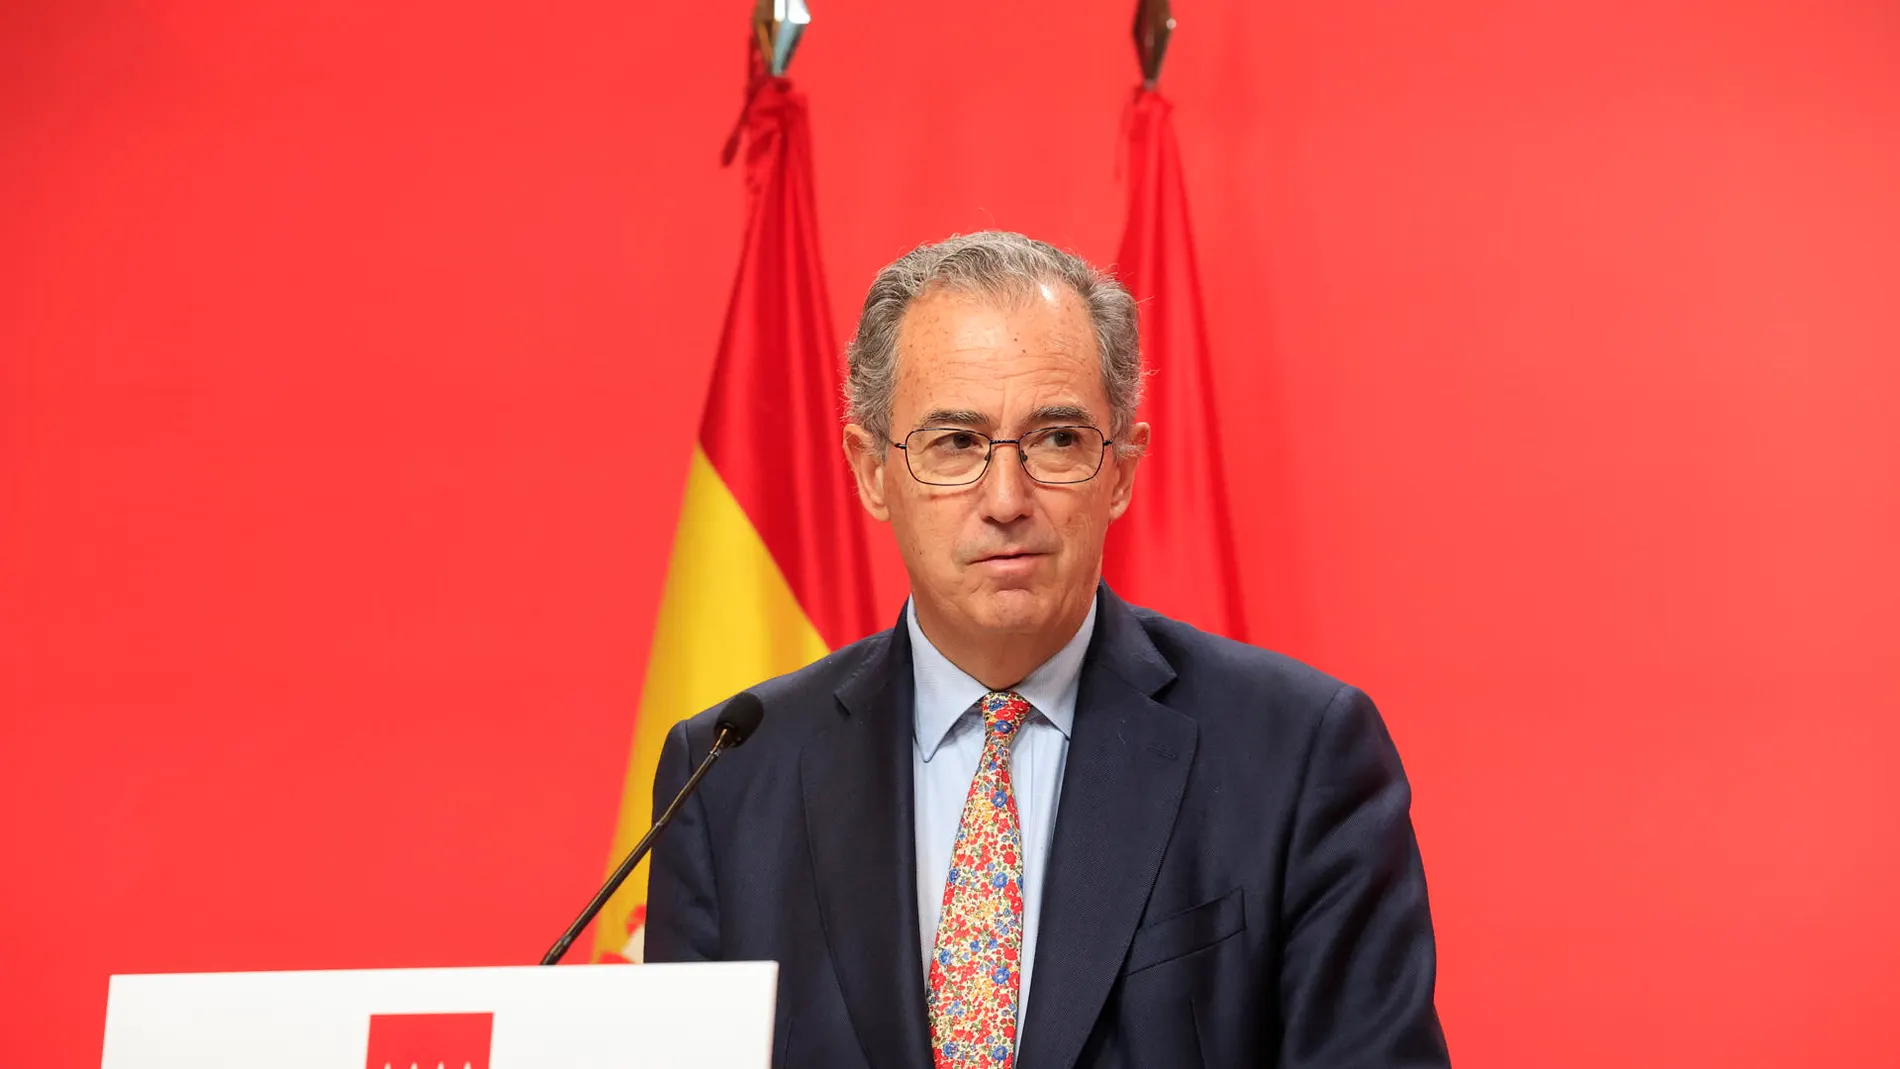 El vicepresidente de la Comunidad de Madrid, Enrique Ossorio